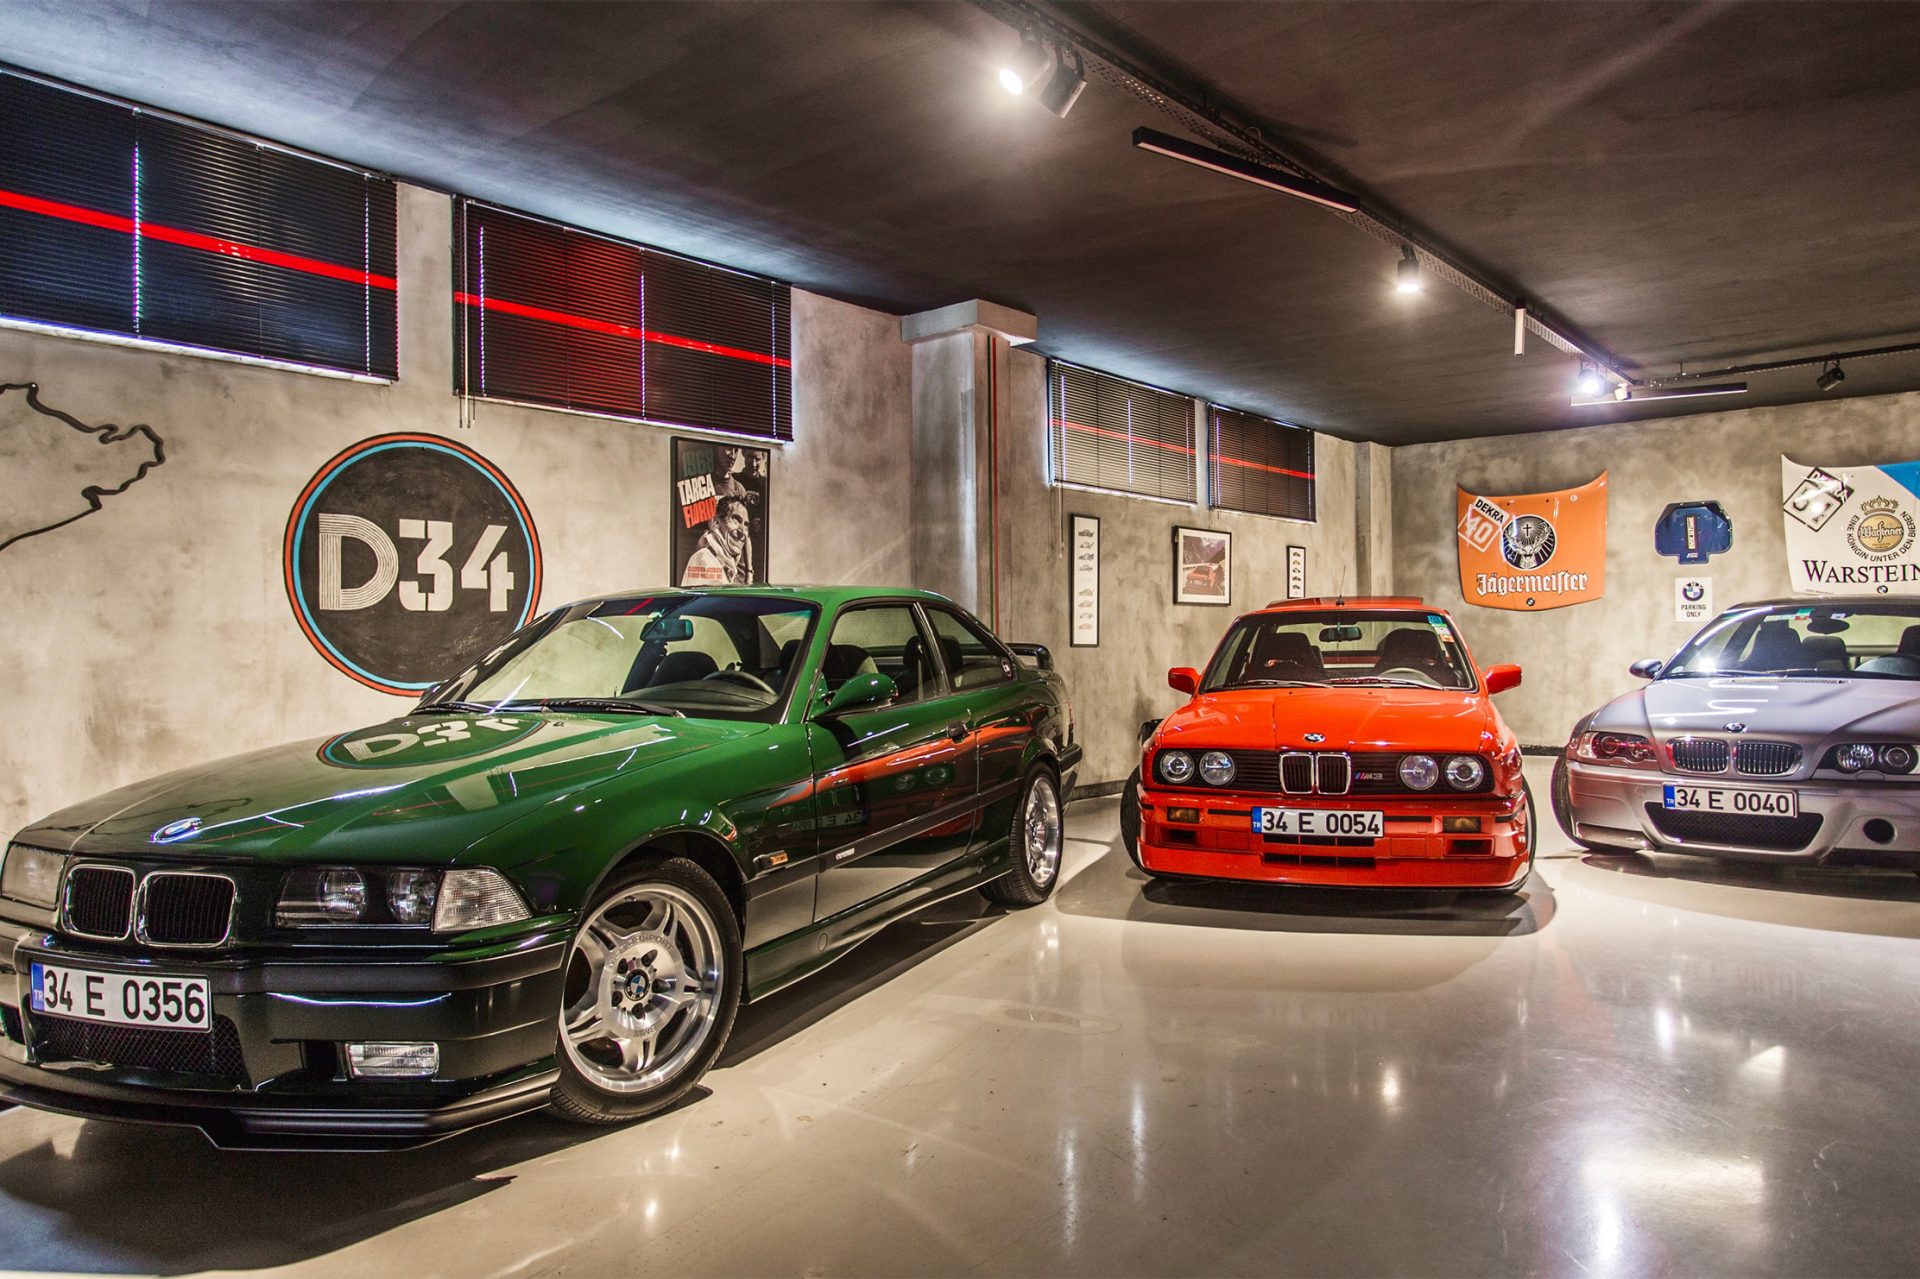 Zu exklusiv für einen Platz im Schuppen: Cans Sammlung mit der seltenen Sonderedition BMW E36 M3 GT, dem BMW E30 M3 und dem BMW E46 M3 CSL.